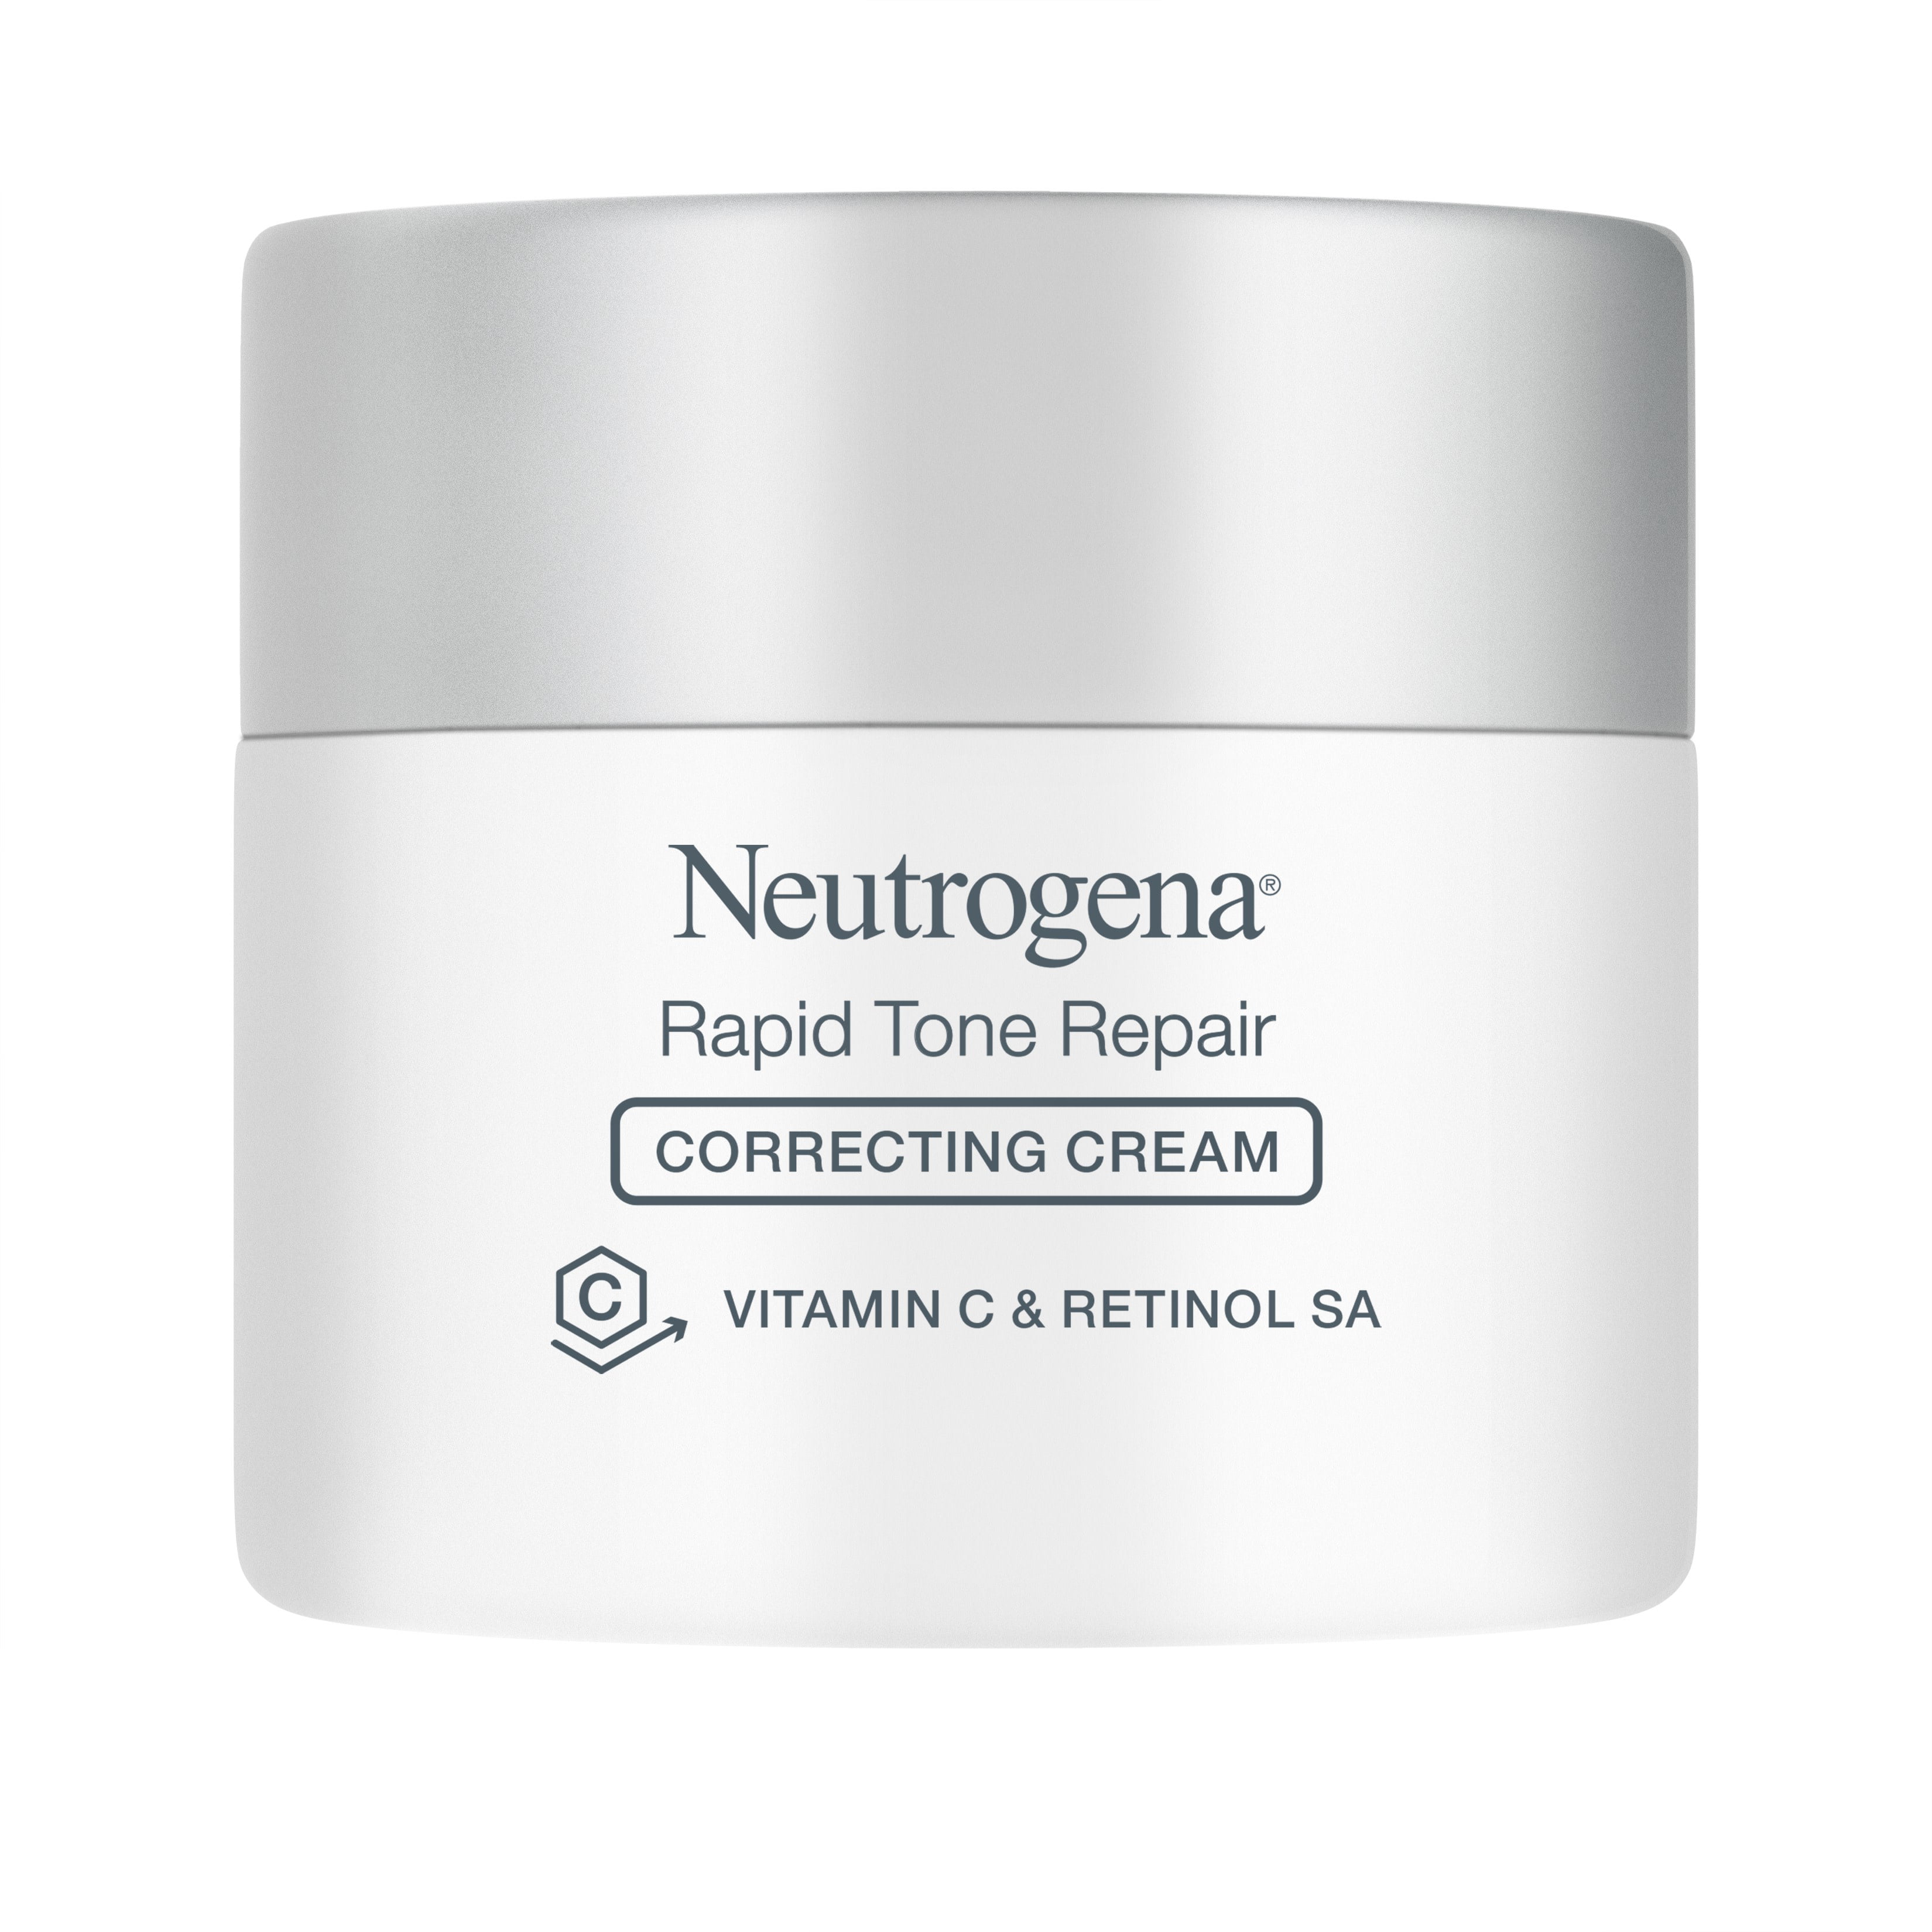 Neutrogena Rapid Tone Repair Correcting Cream Vitamin C Retinol